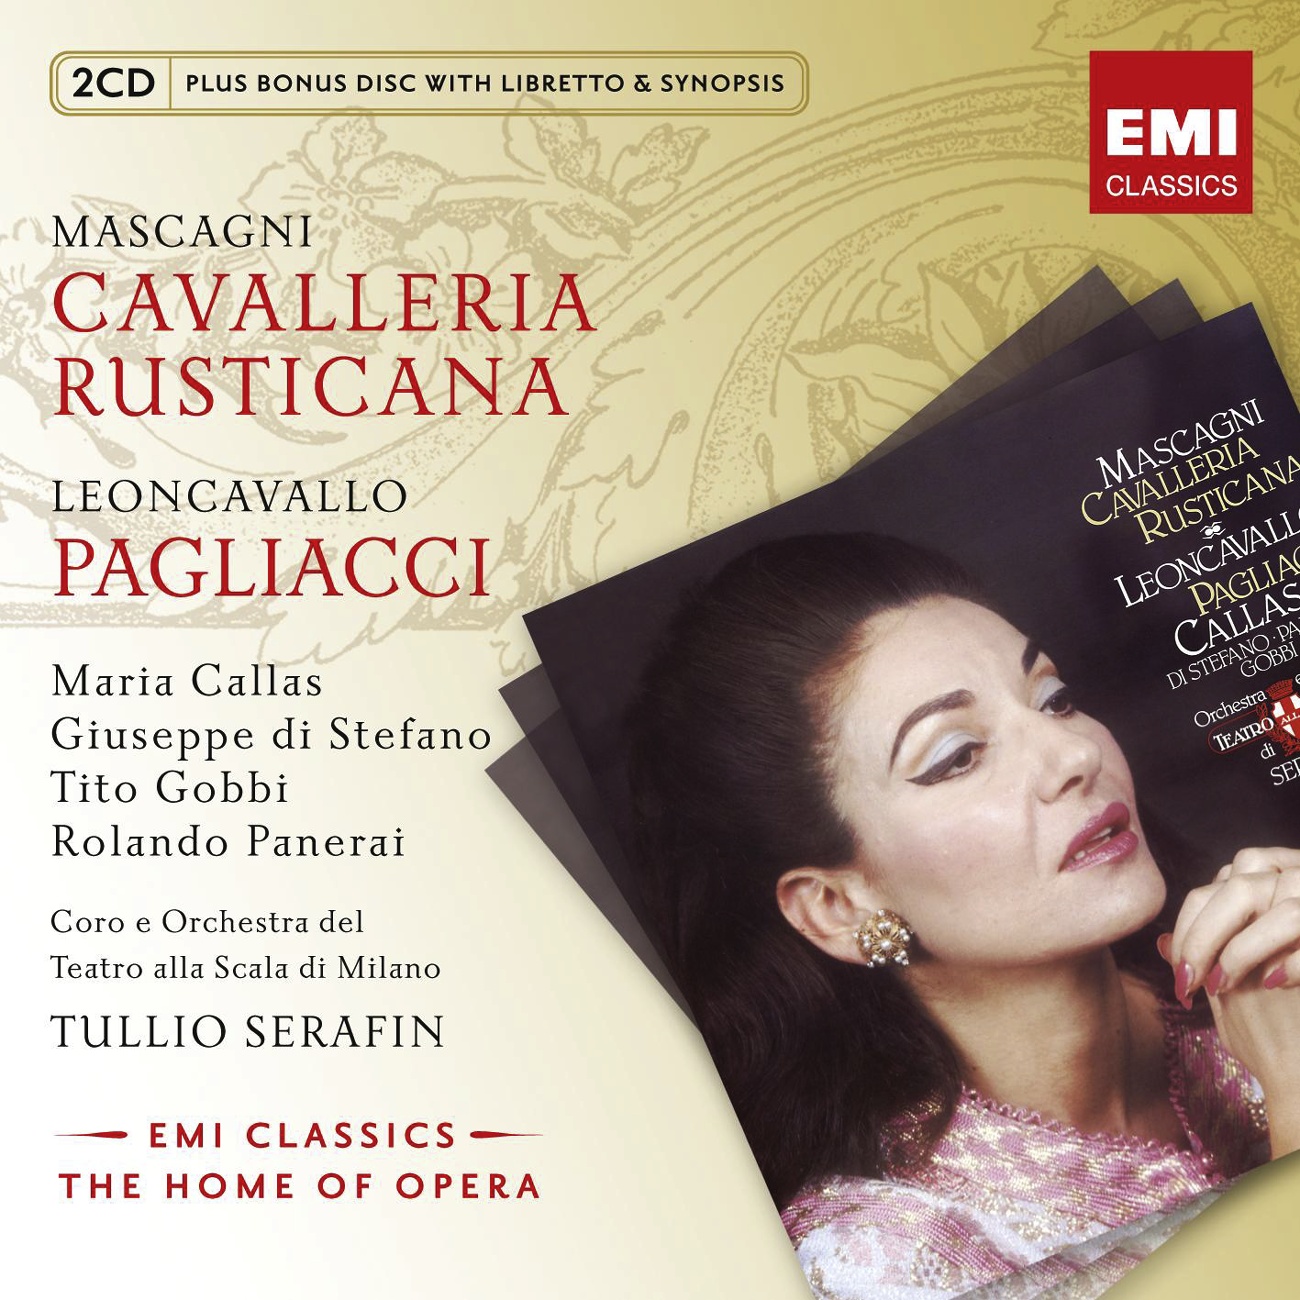 Cavalleria Rusticana (1997 Digital Remaster): Viva il vino spumeggiante (Turiddu/Coro/Lola)